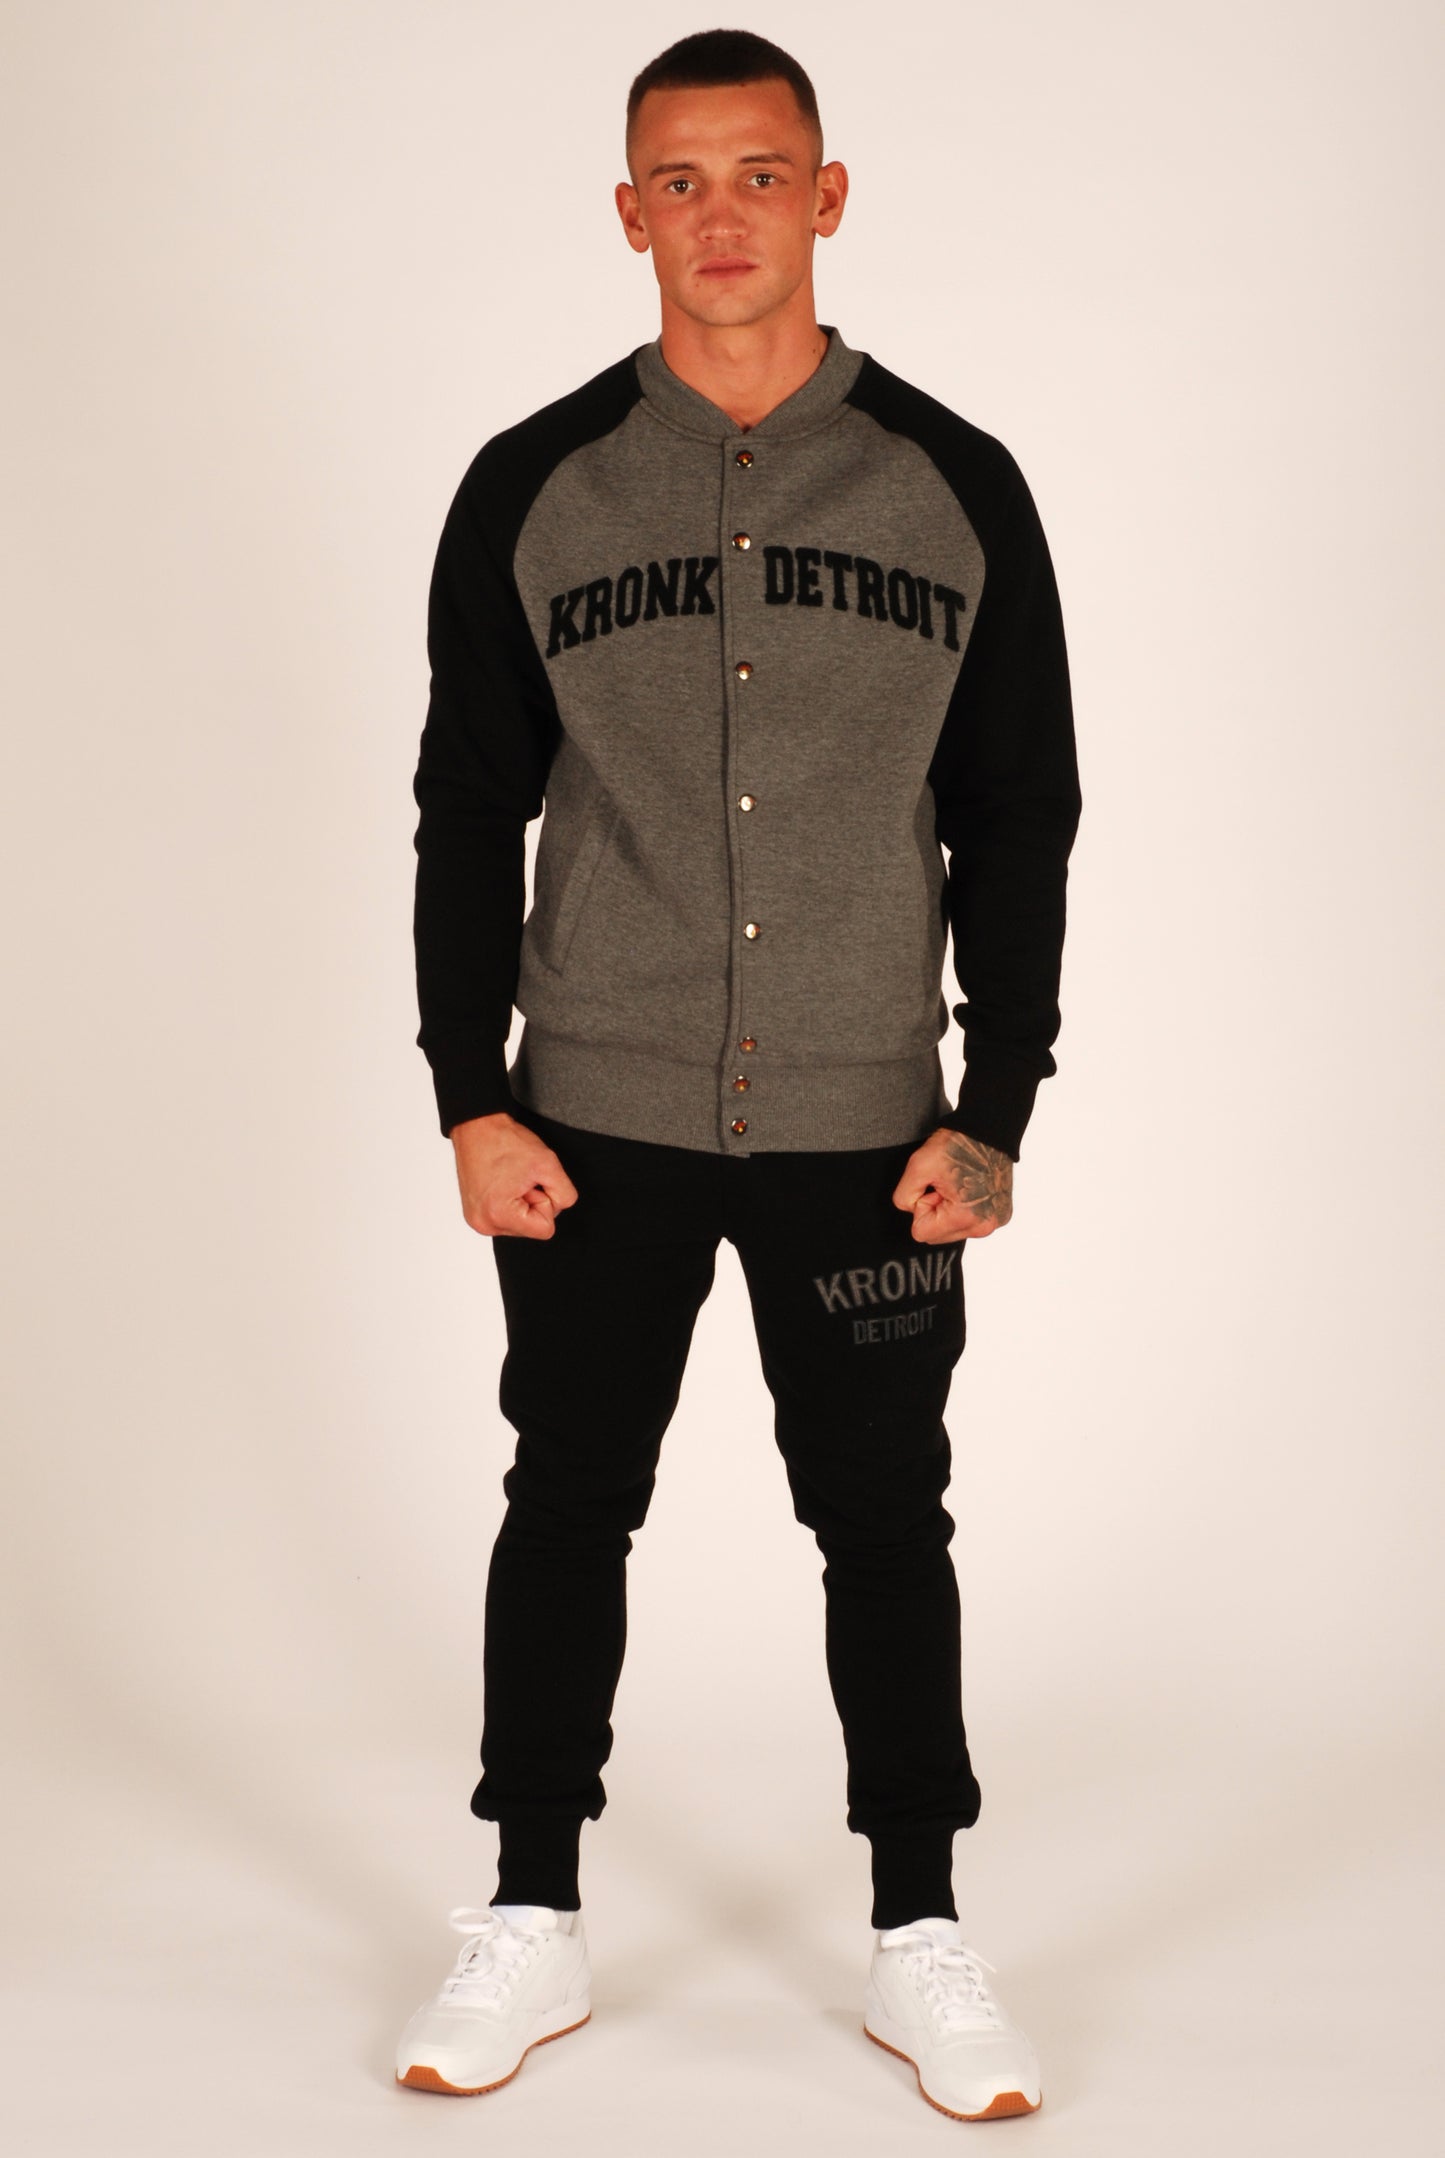 KRONK Detroit College Jacket Charcoal Melange